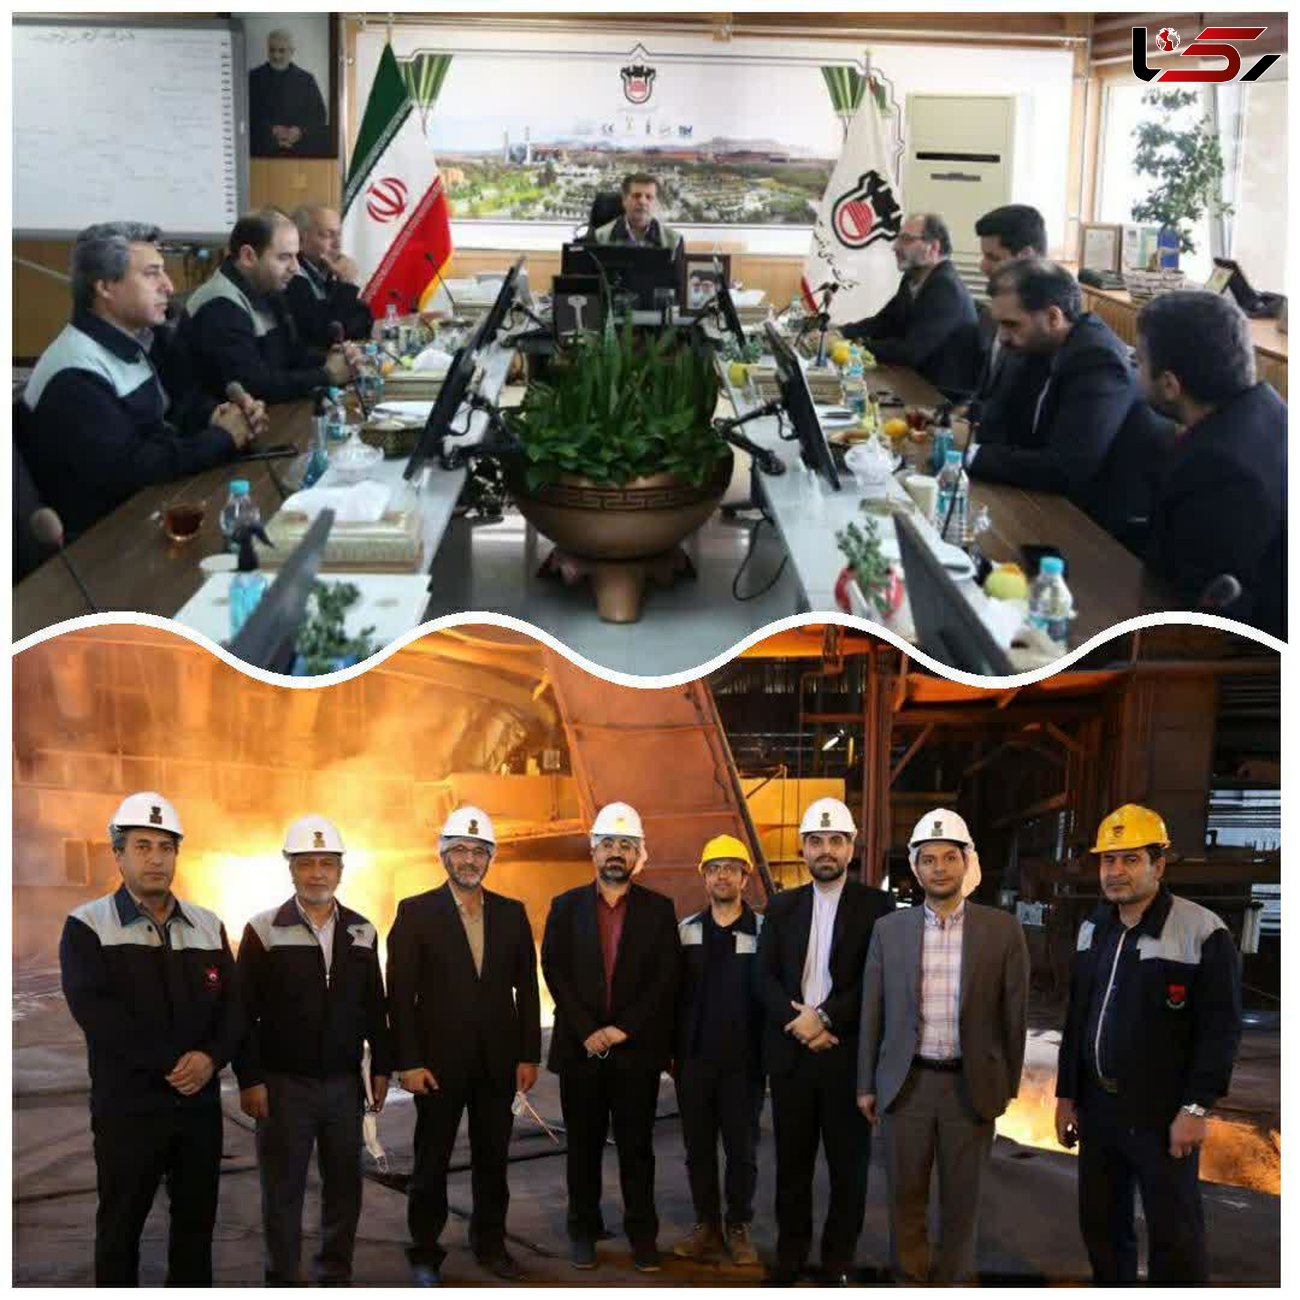 ذوب آهن اصفهان پتانسیل استخراج و بهره برداری از معادن کشور را دارد